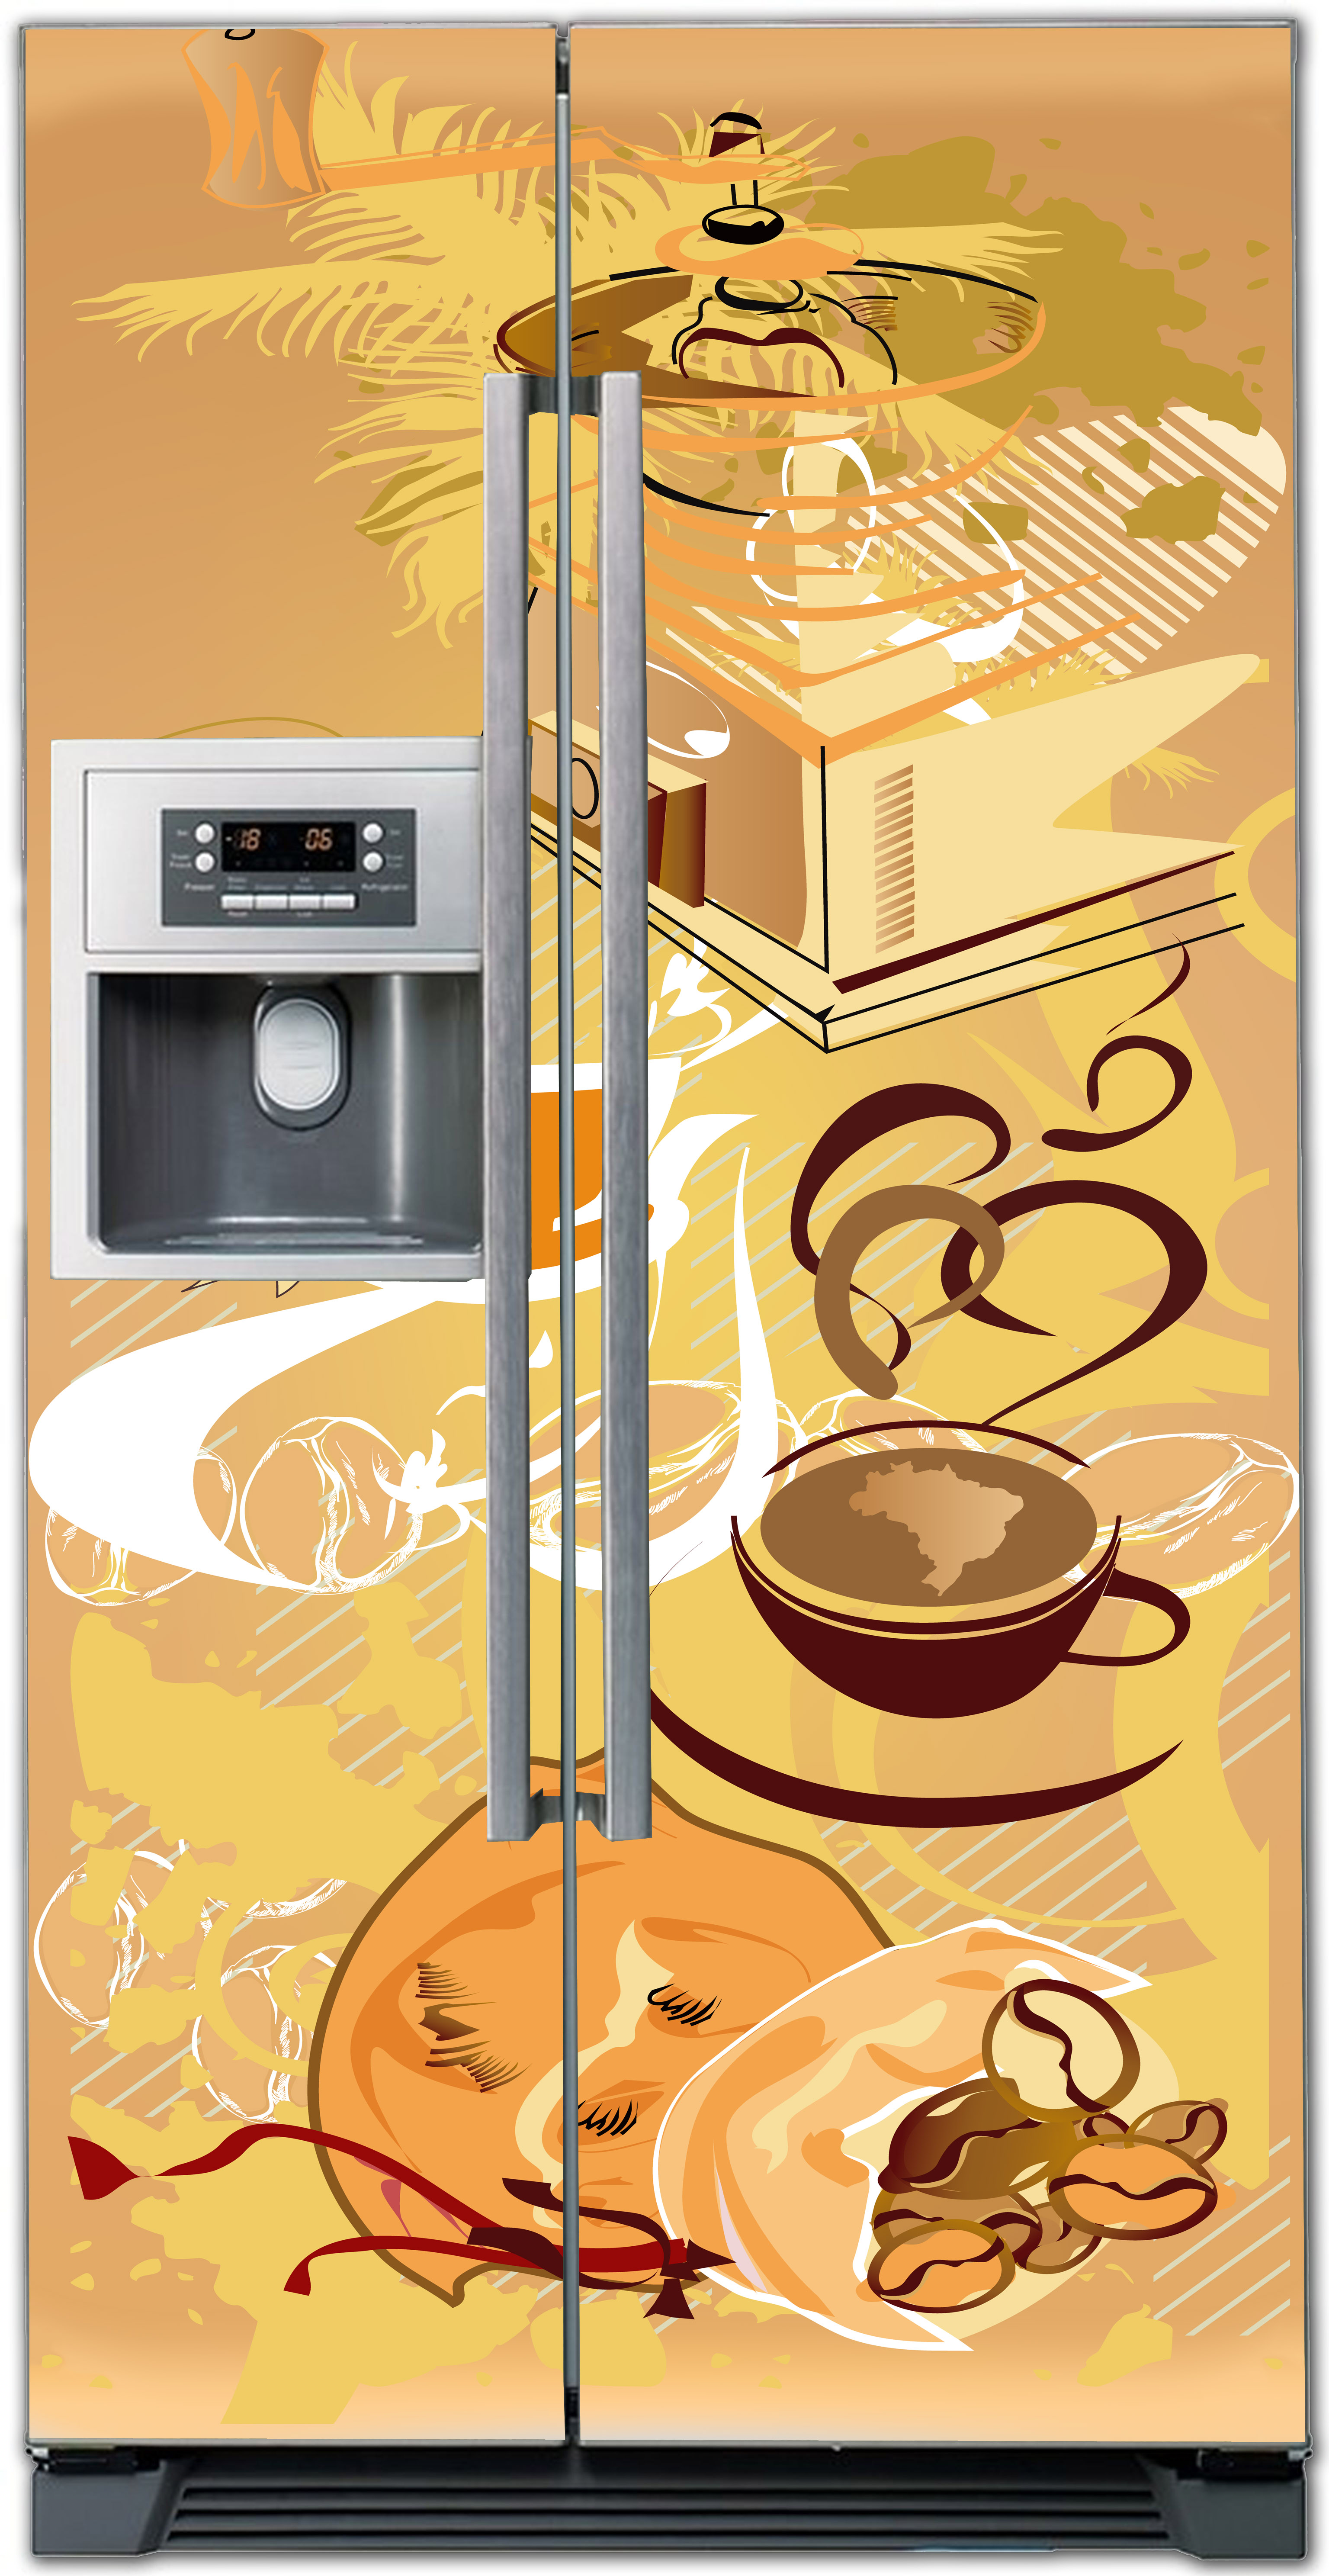 Виниловая наклейка на холодильник -  Кофе 1. Арабика